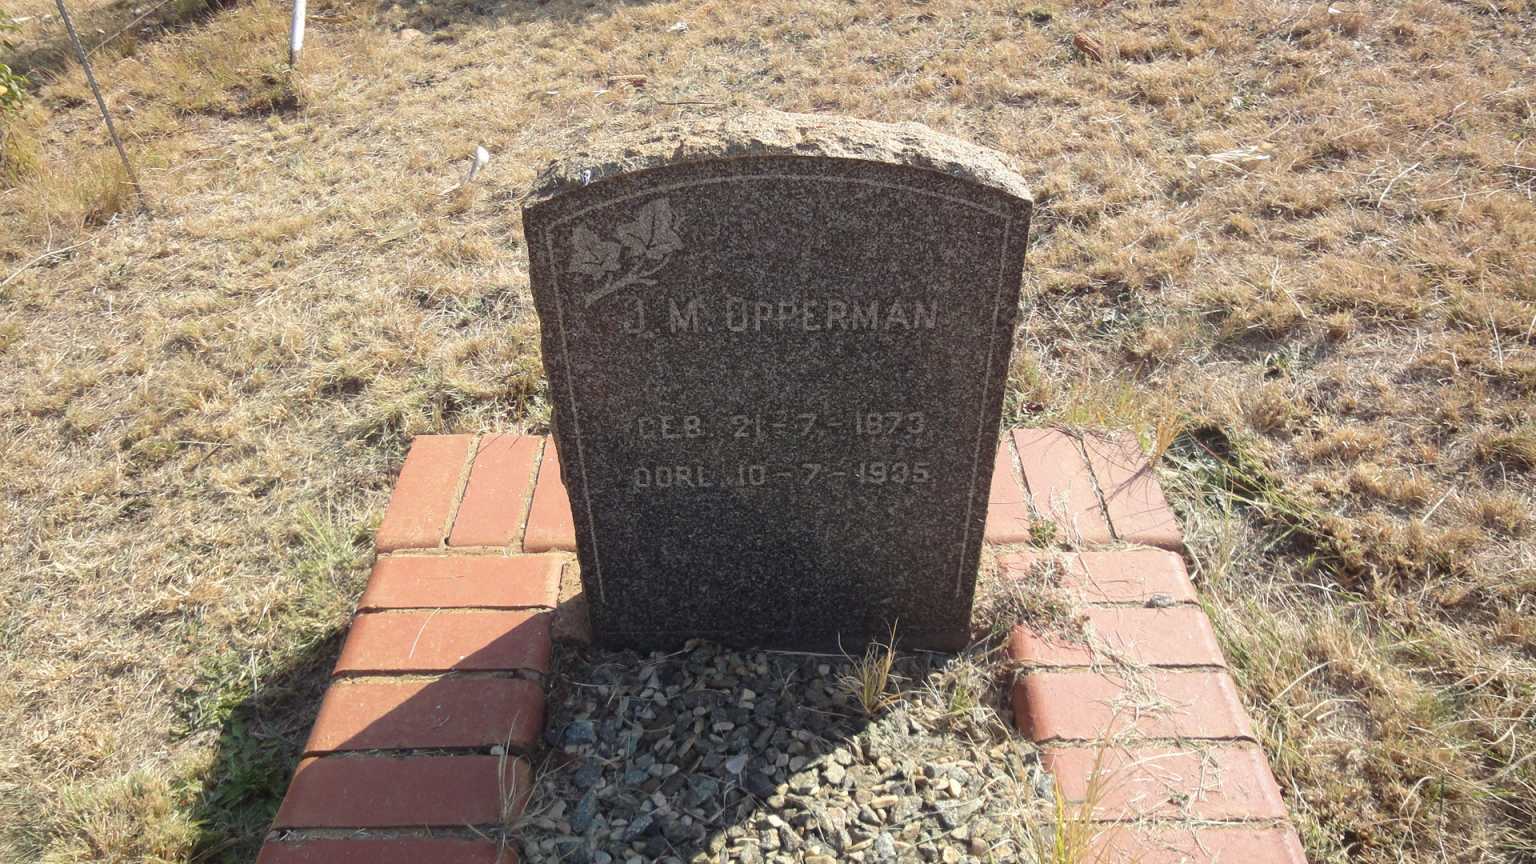 OPPERMAN J.M. 1873-1935